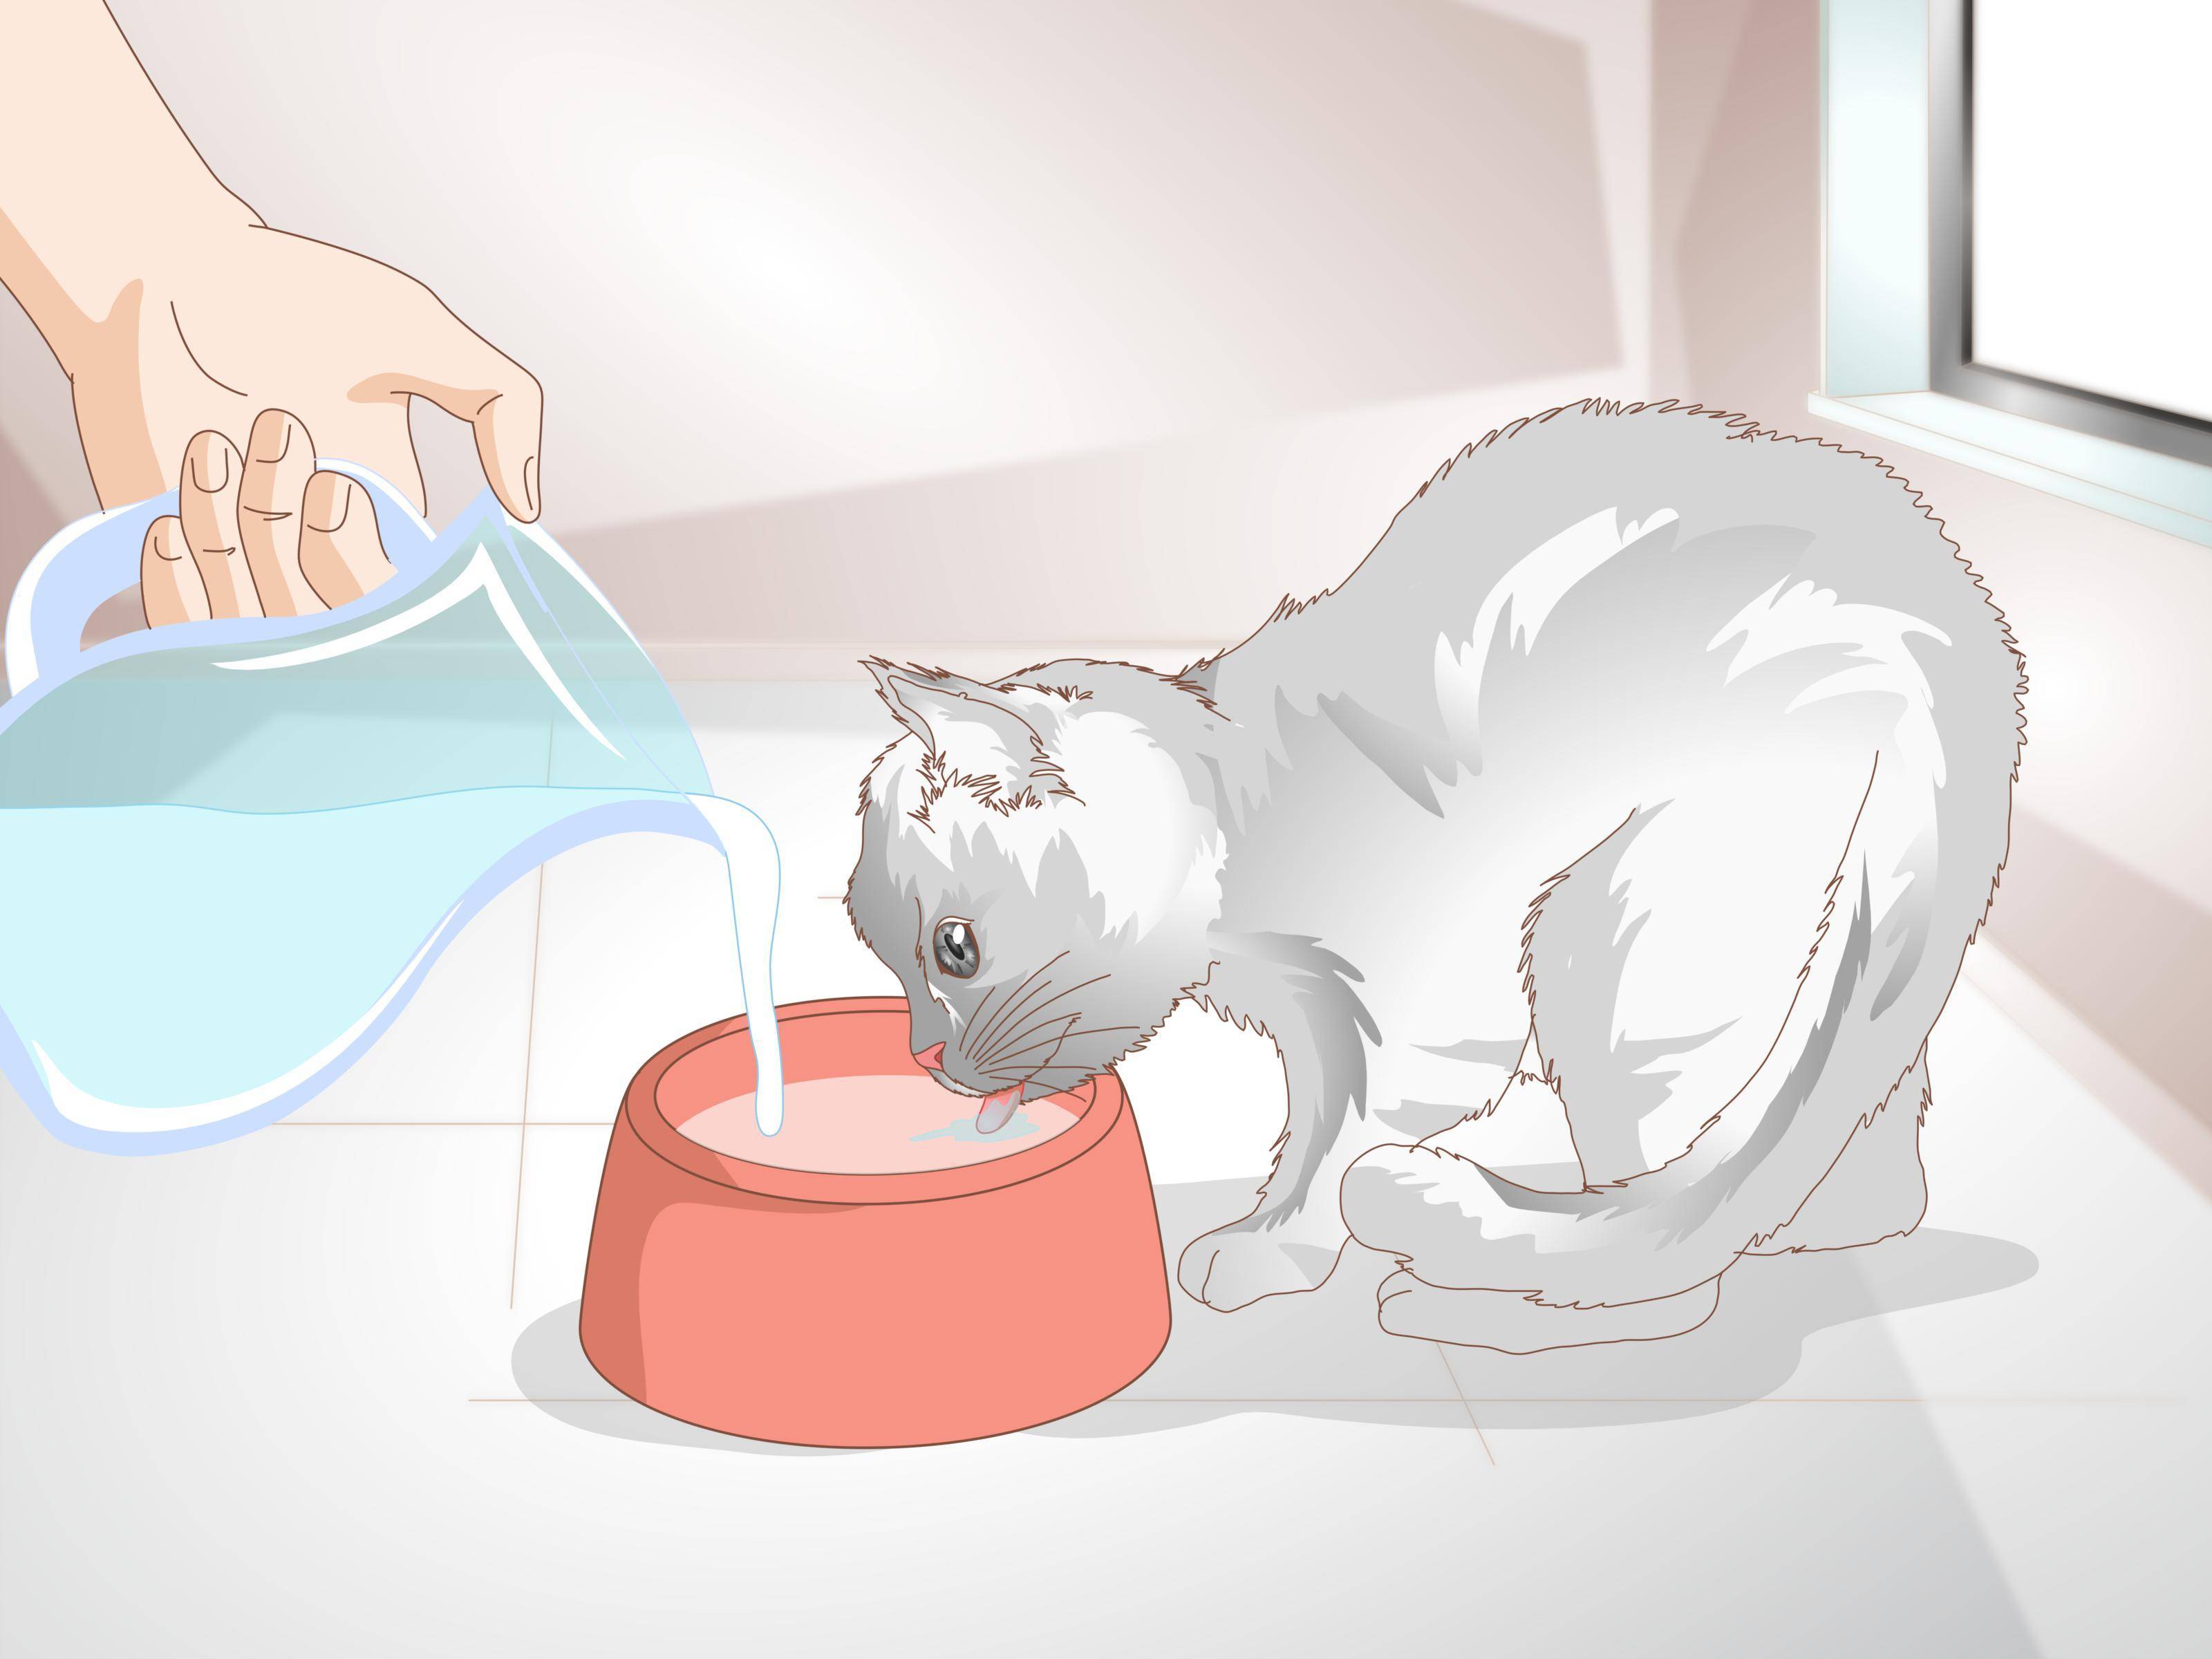 Запоры у кошек: причины, симптомы и советы ветеринара, как лечить